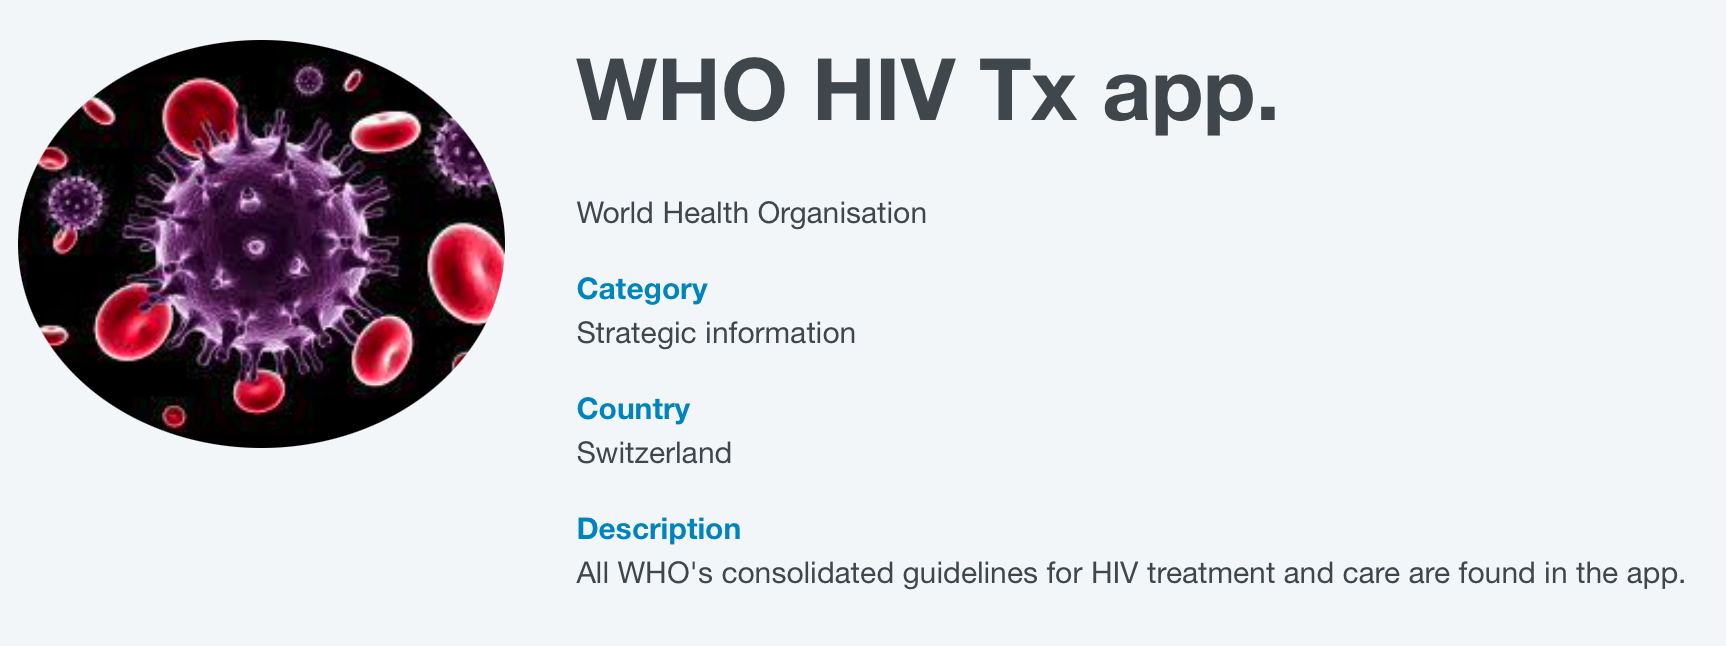 WHO HIV Tx App